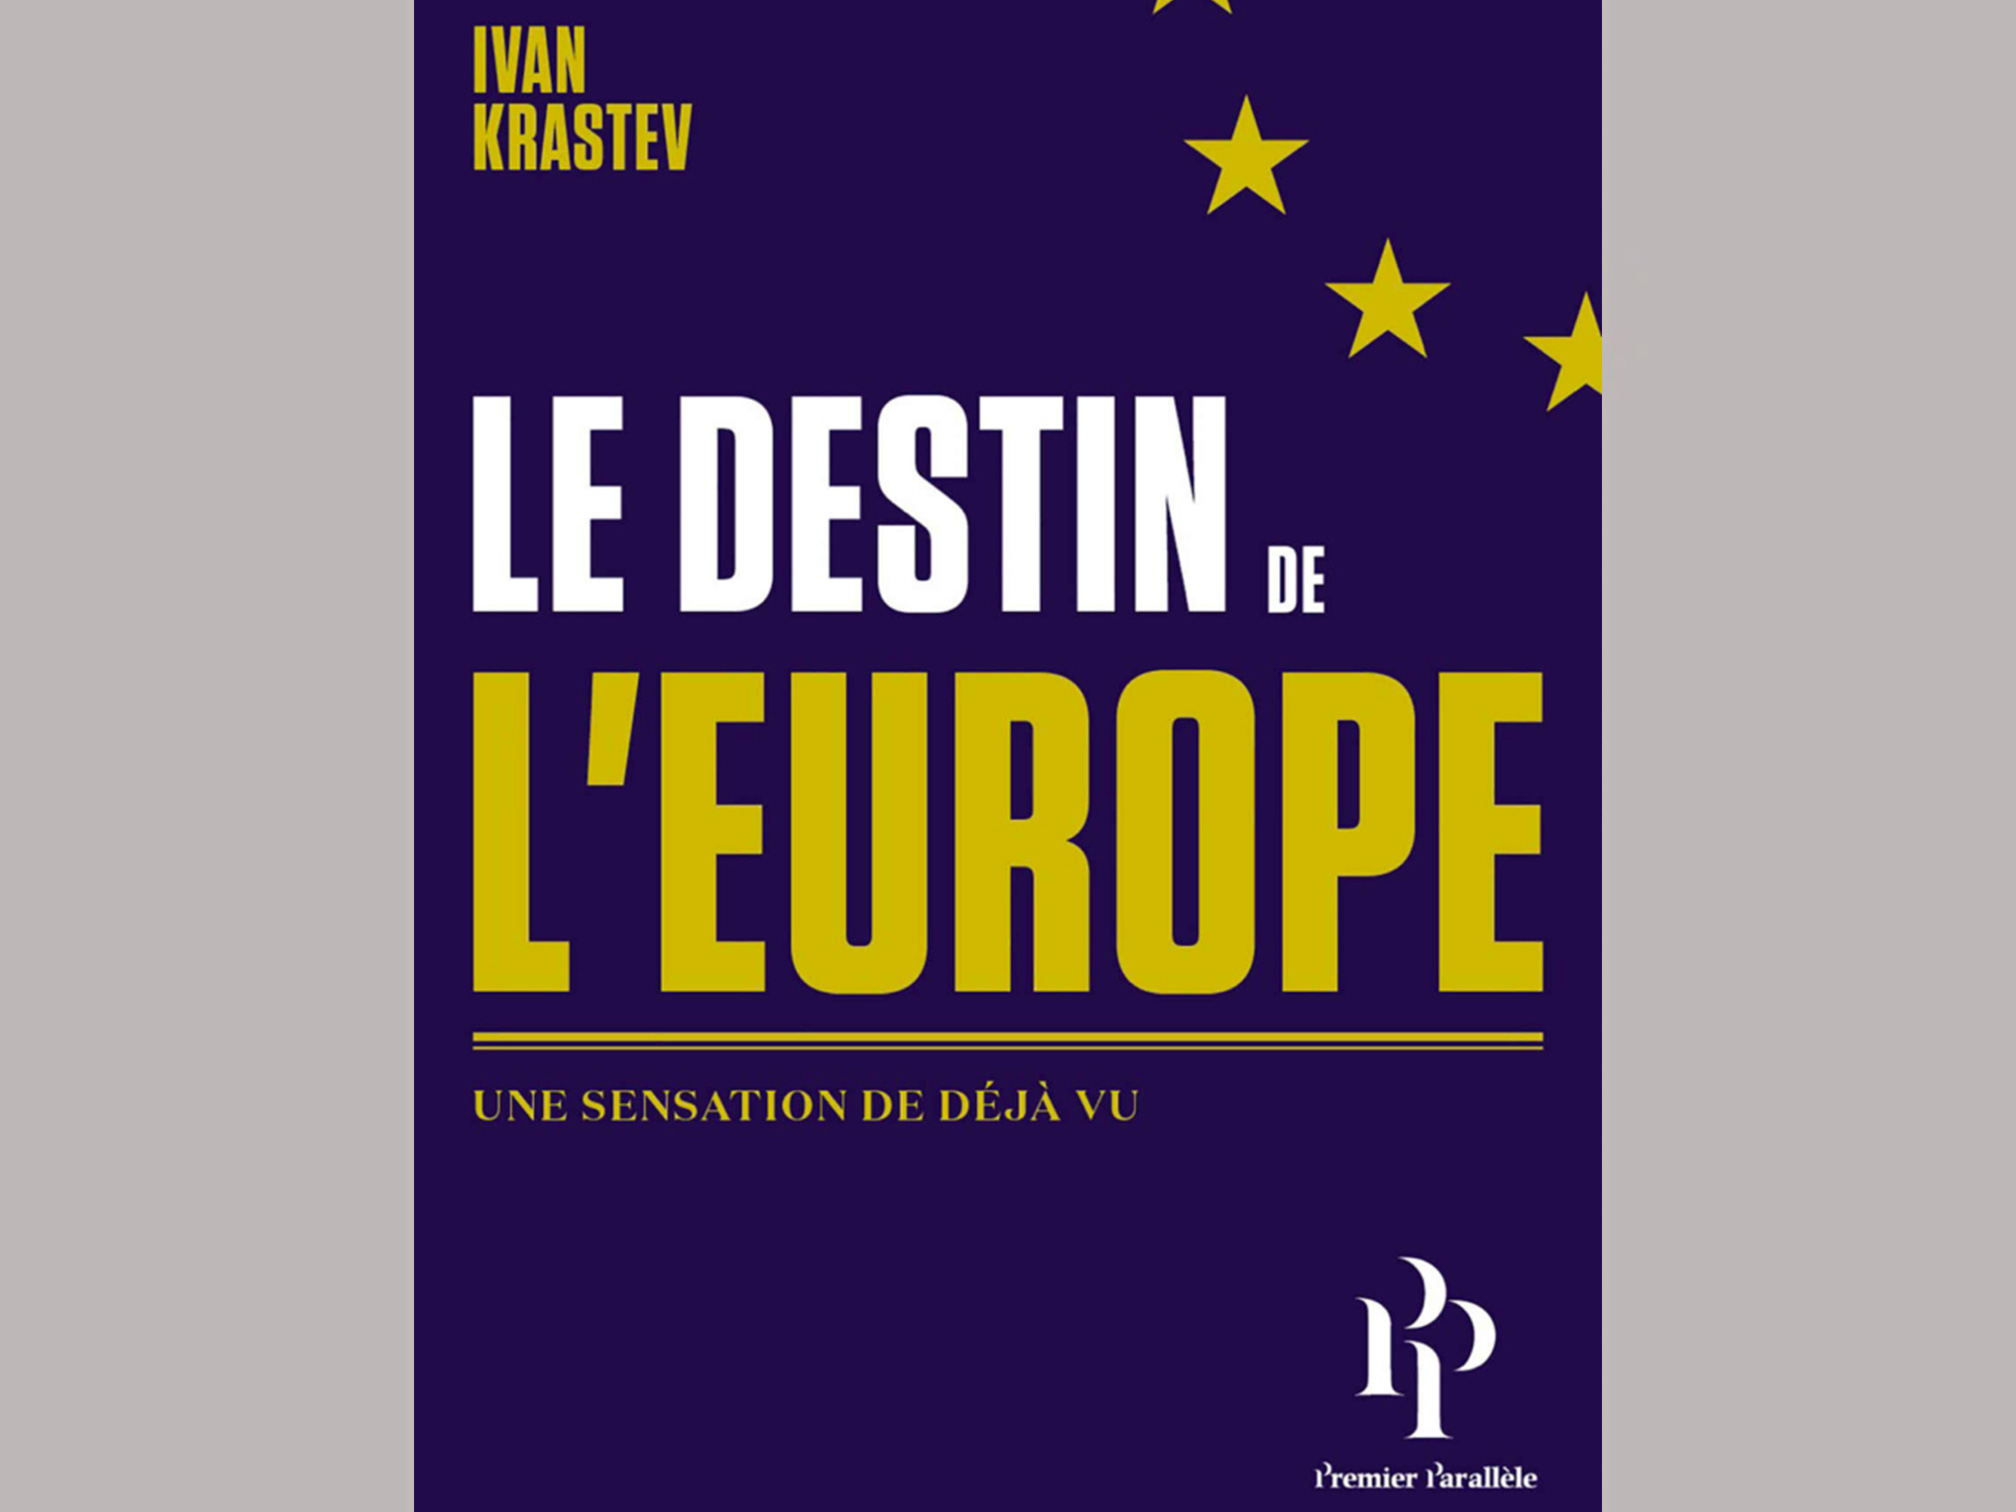 Le Destin de l’Europe, un livre remarquable sur notre Union Européenne